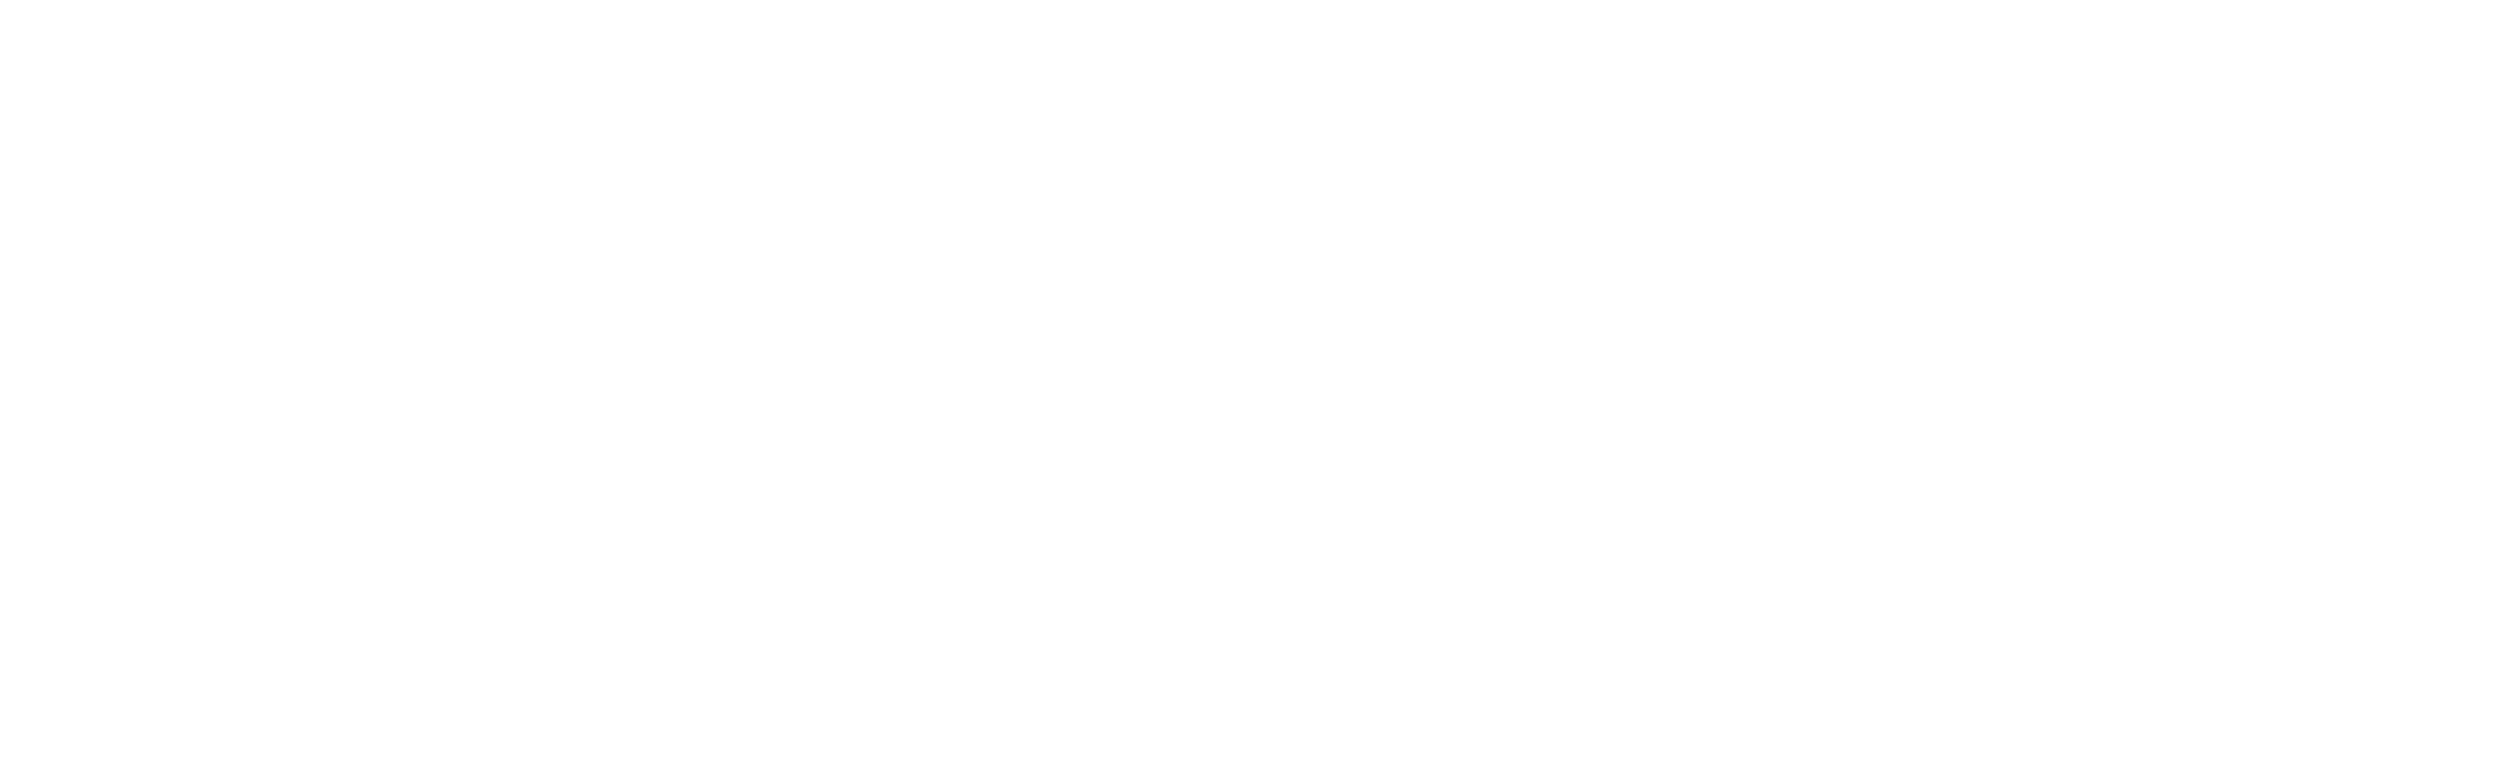 Mollywood logo